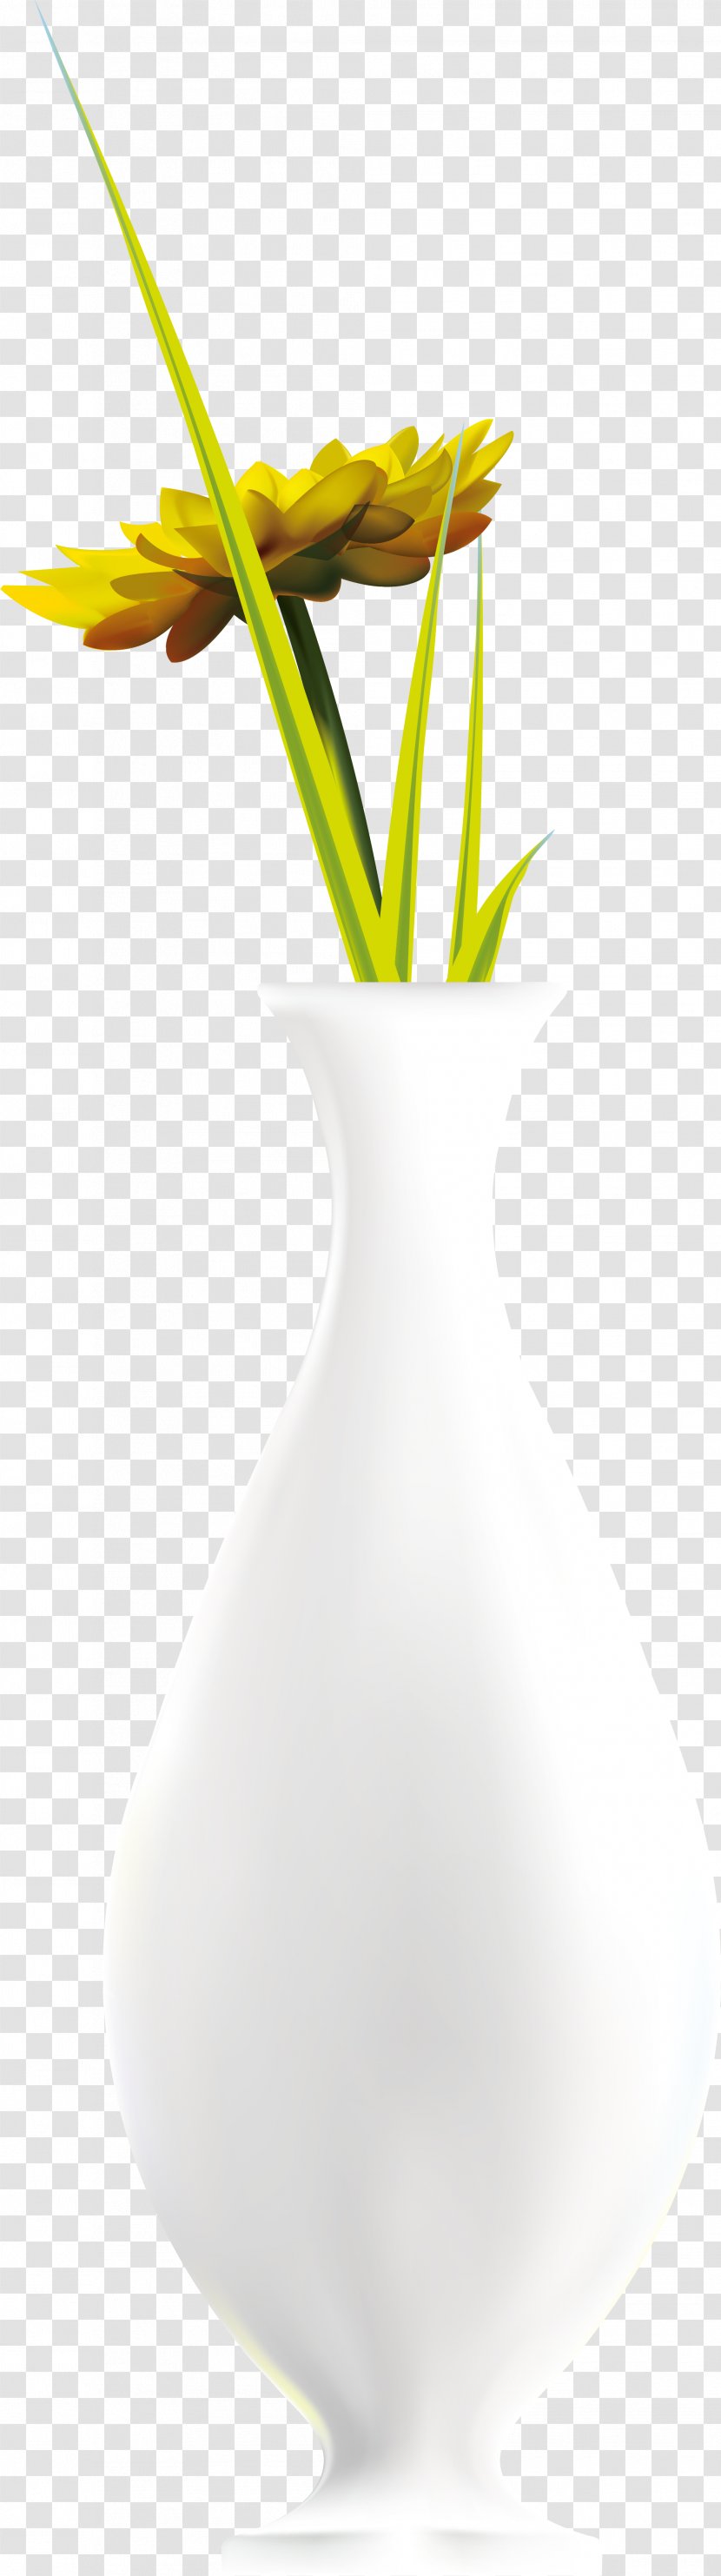 Yellow Flower Petal - Flowerpot - Hand Painted Bottle Transparent PNG